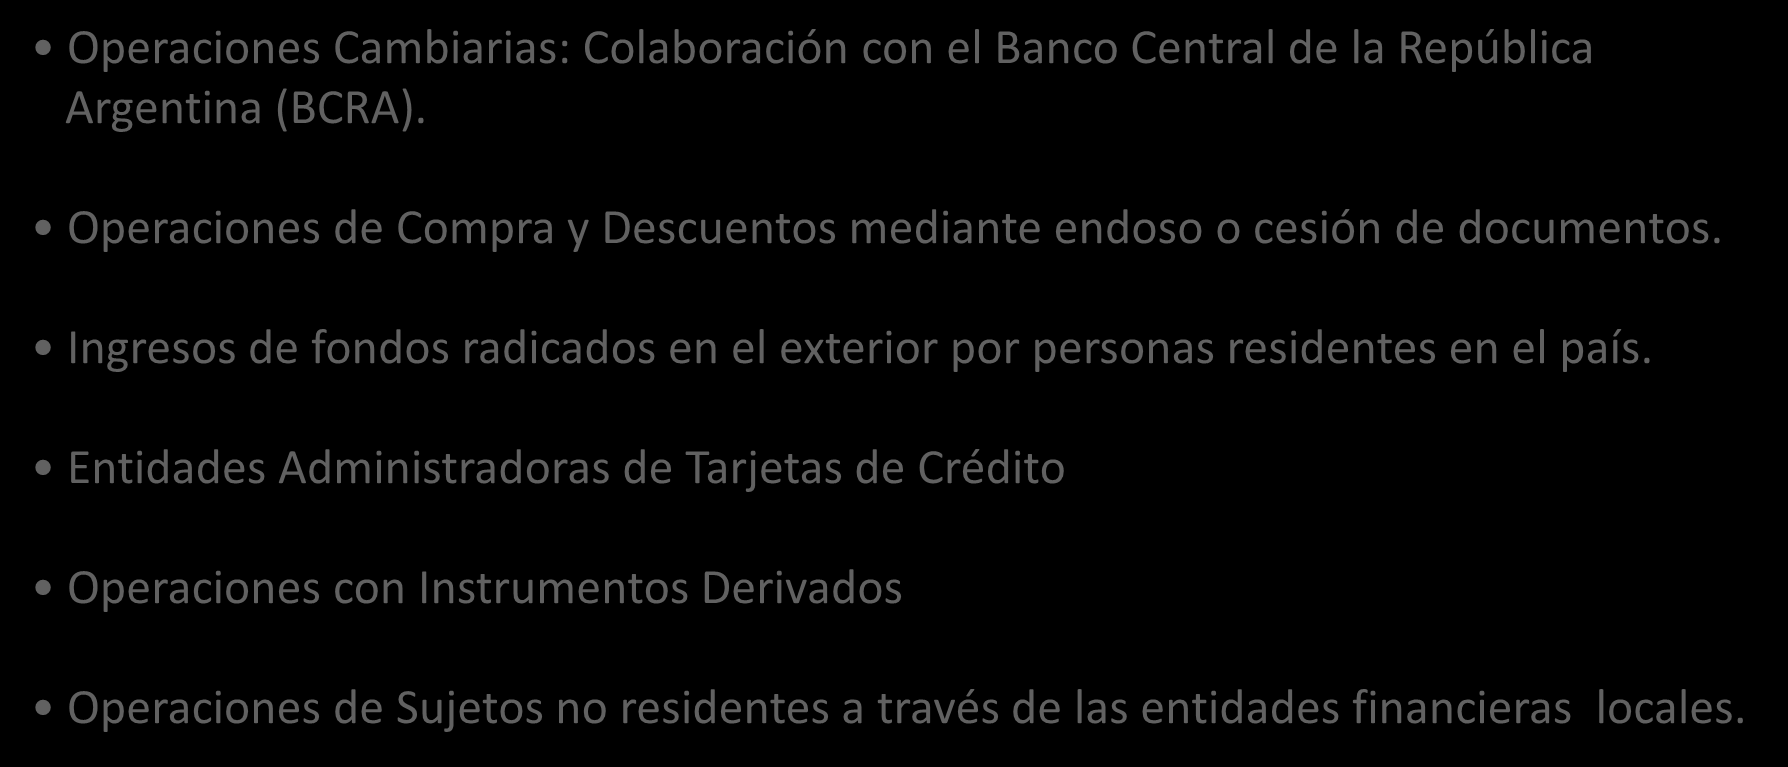 Otros Regímenes de Información Operaciones Cambiarias: Colaboración con el Banco Central de la República Argentina (BCRA). Operaciones de Compra y Descuentos mediante endoso o cesión de documentos.